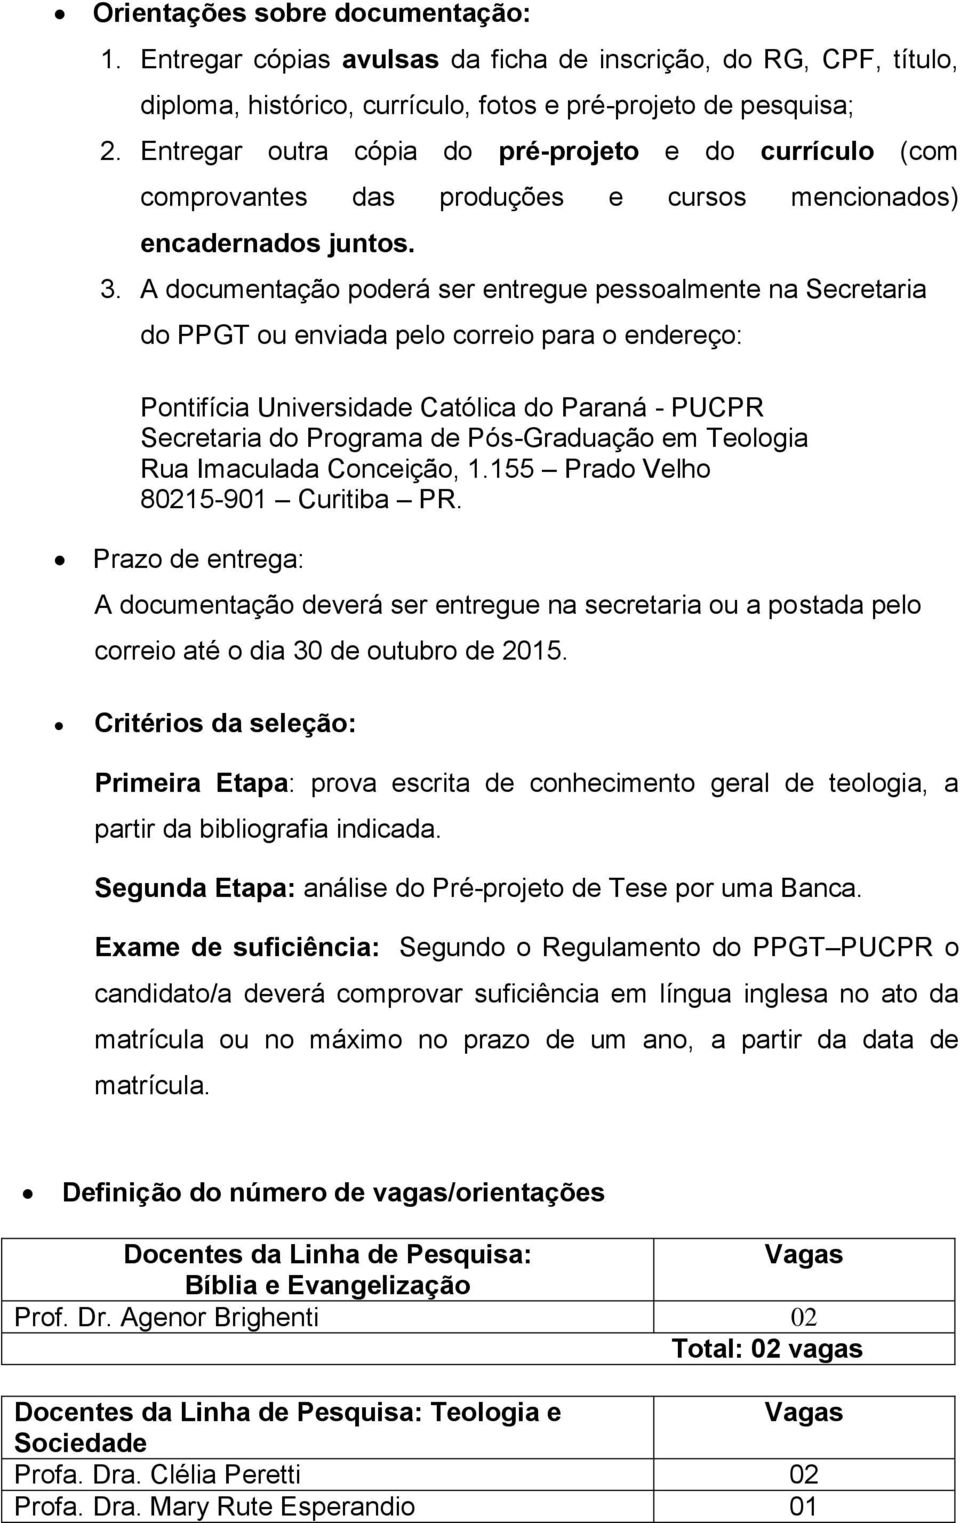 A documentação poderá ser entregue pessoalmente na Secretaria do PPGT ou enviada pelo correio para o endereço: Pontifícia Universidade Católica do Paraná - PUCPR Secretaria do Programa de